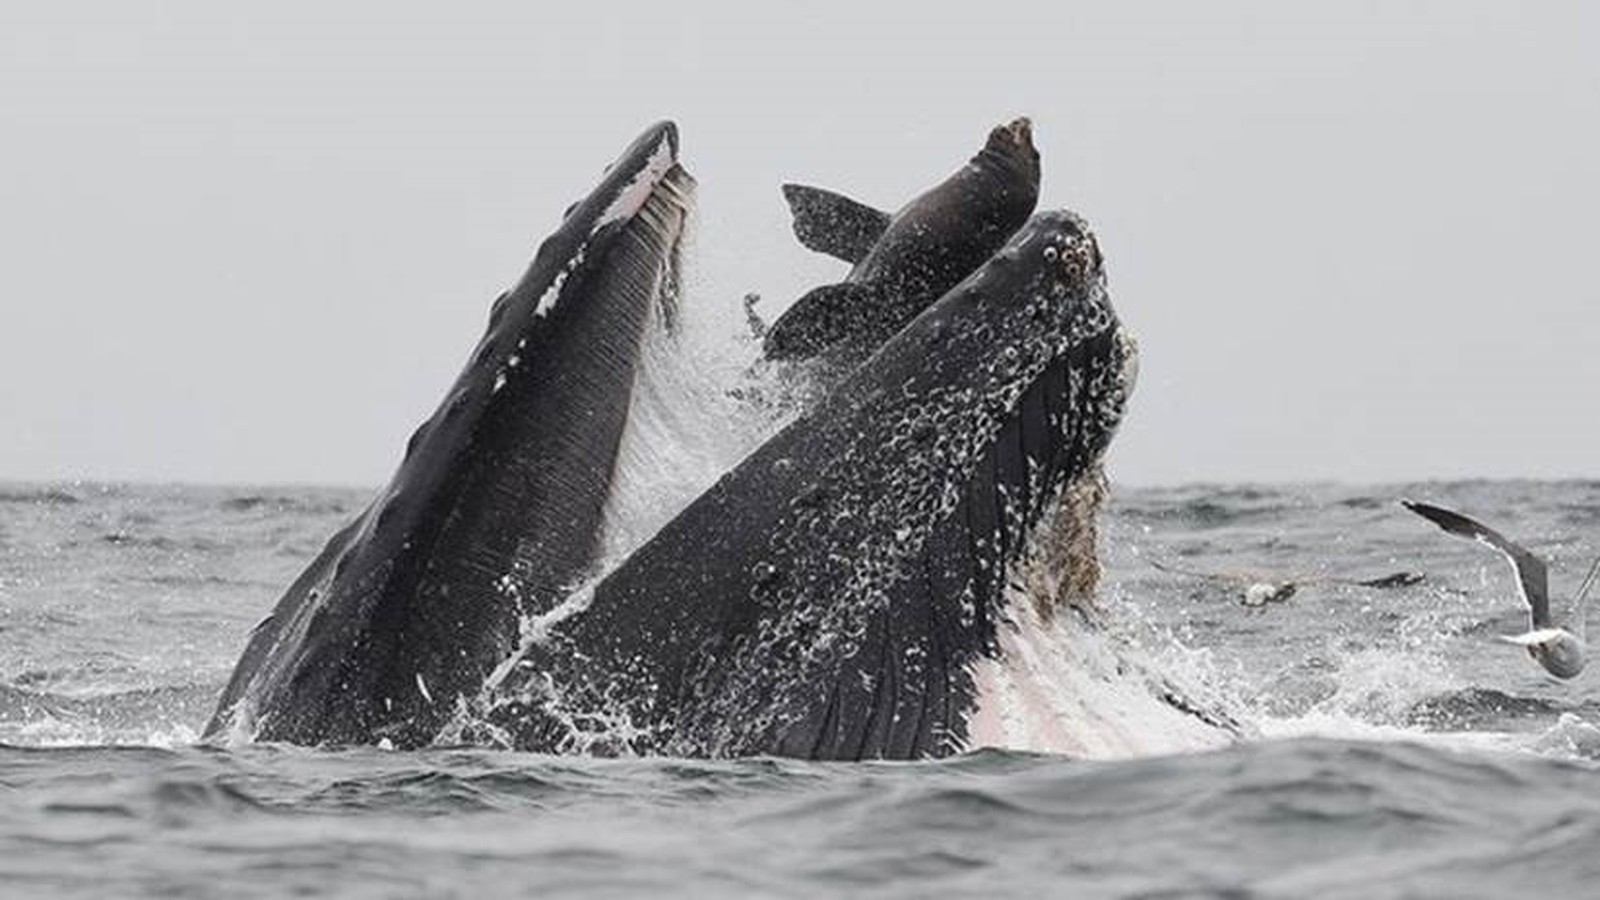 Baleia Atacando Lobo Marinho